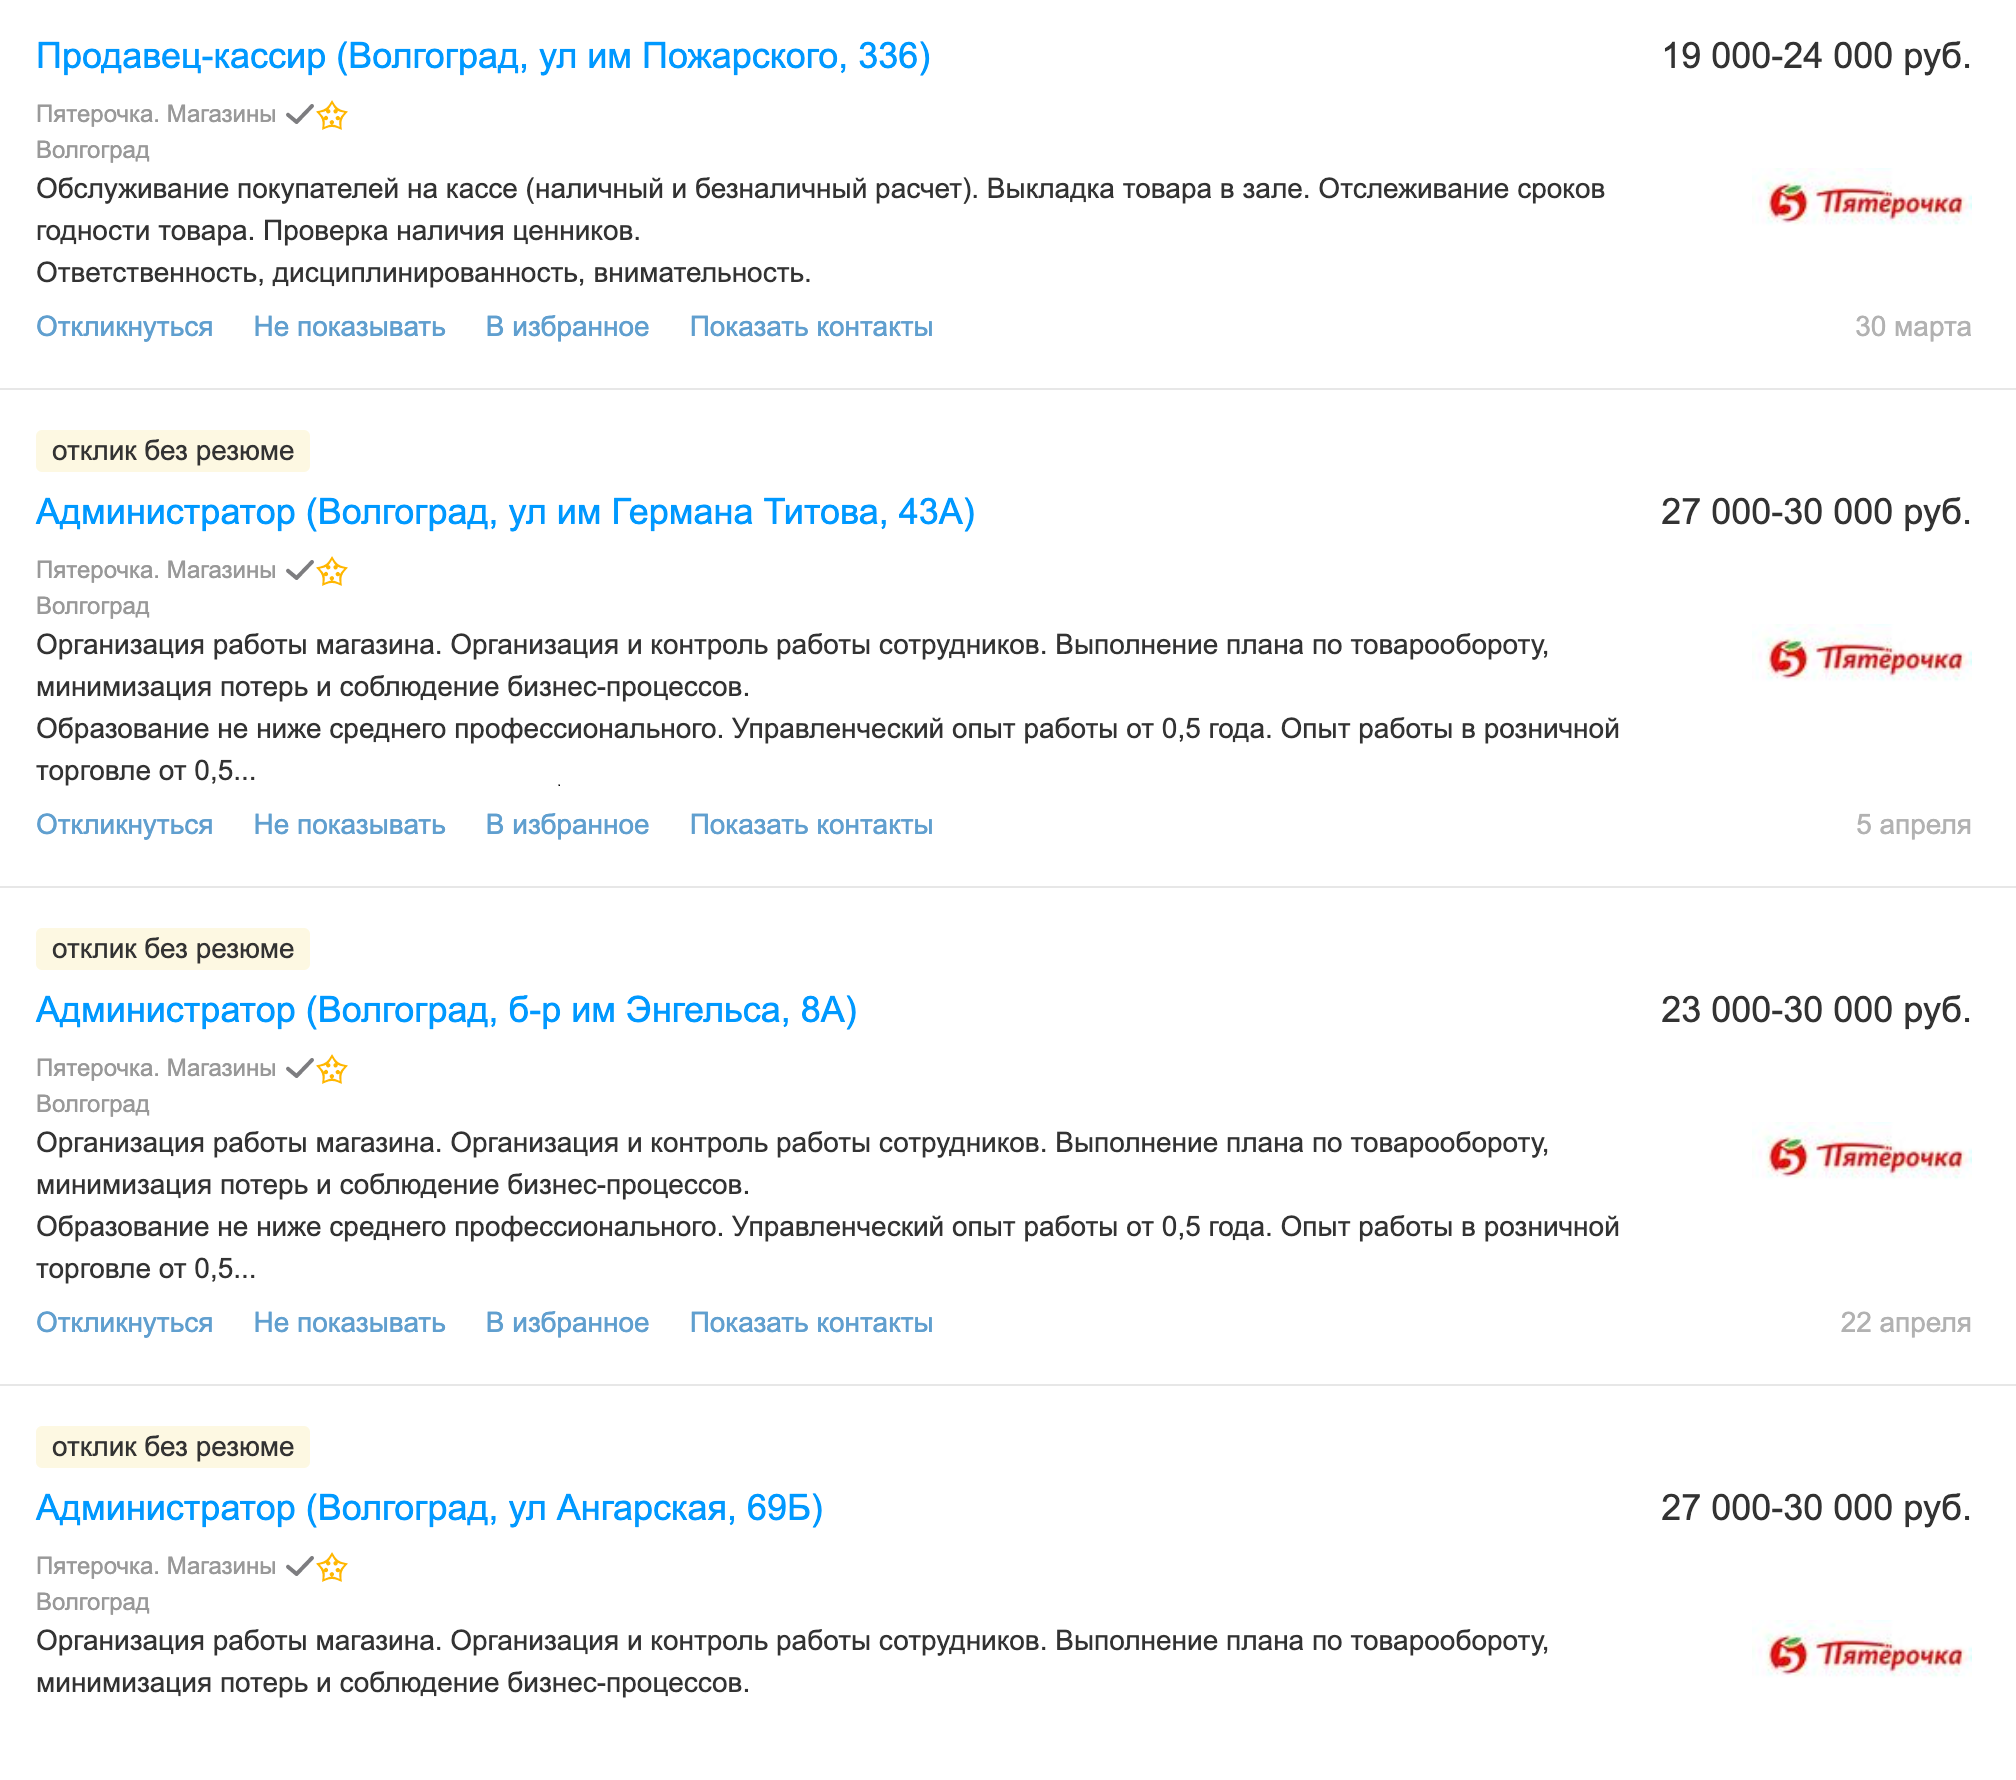 Продавцы-кассиры в «Пятерочке», судя по предложениям на hh.ru, получают до 25 тысяч, администраторы магазинов — до 30